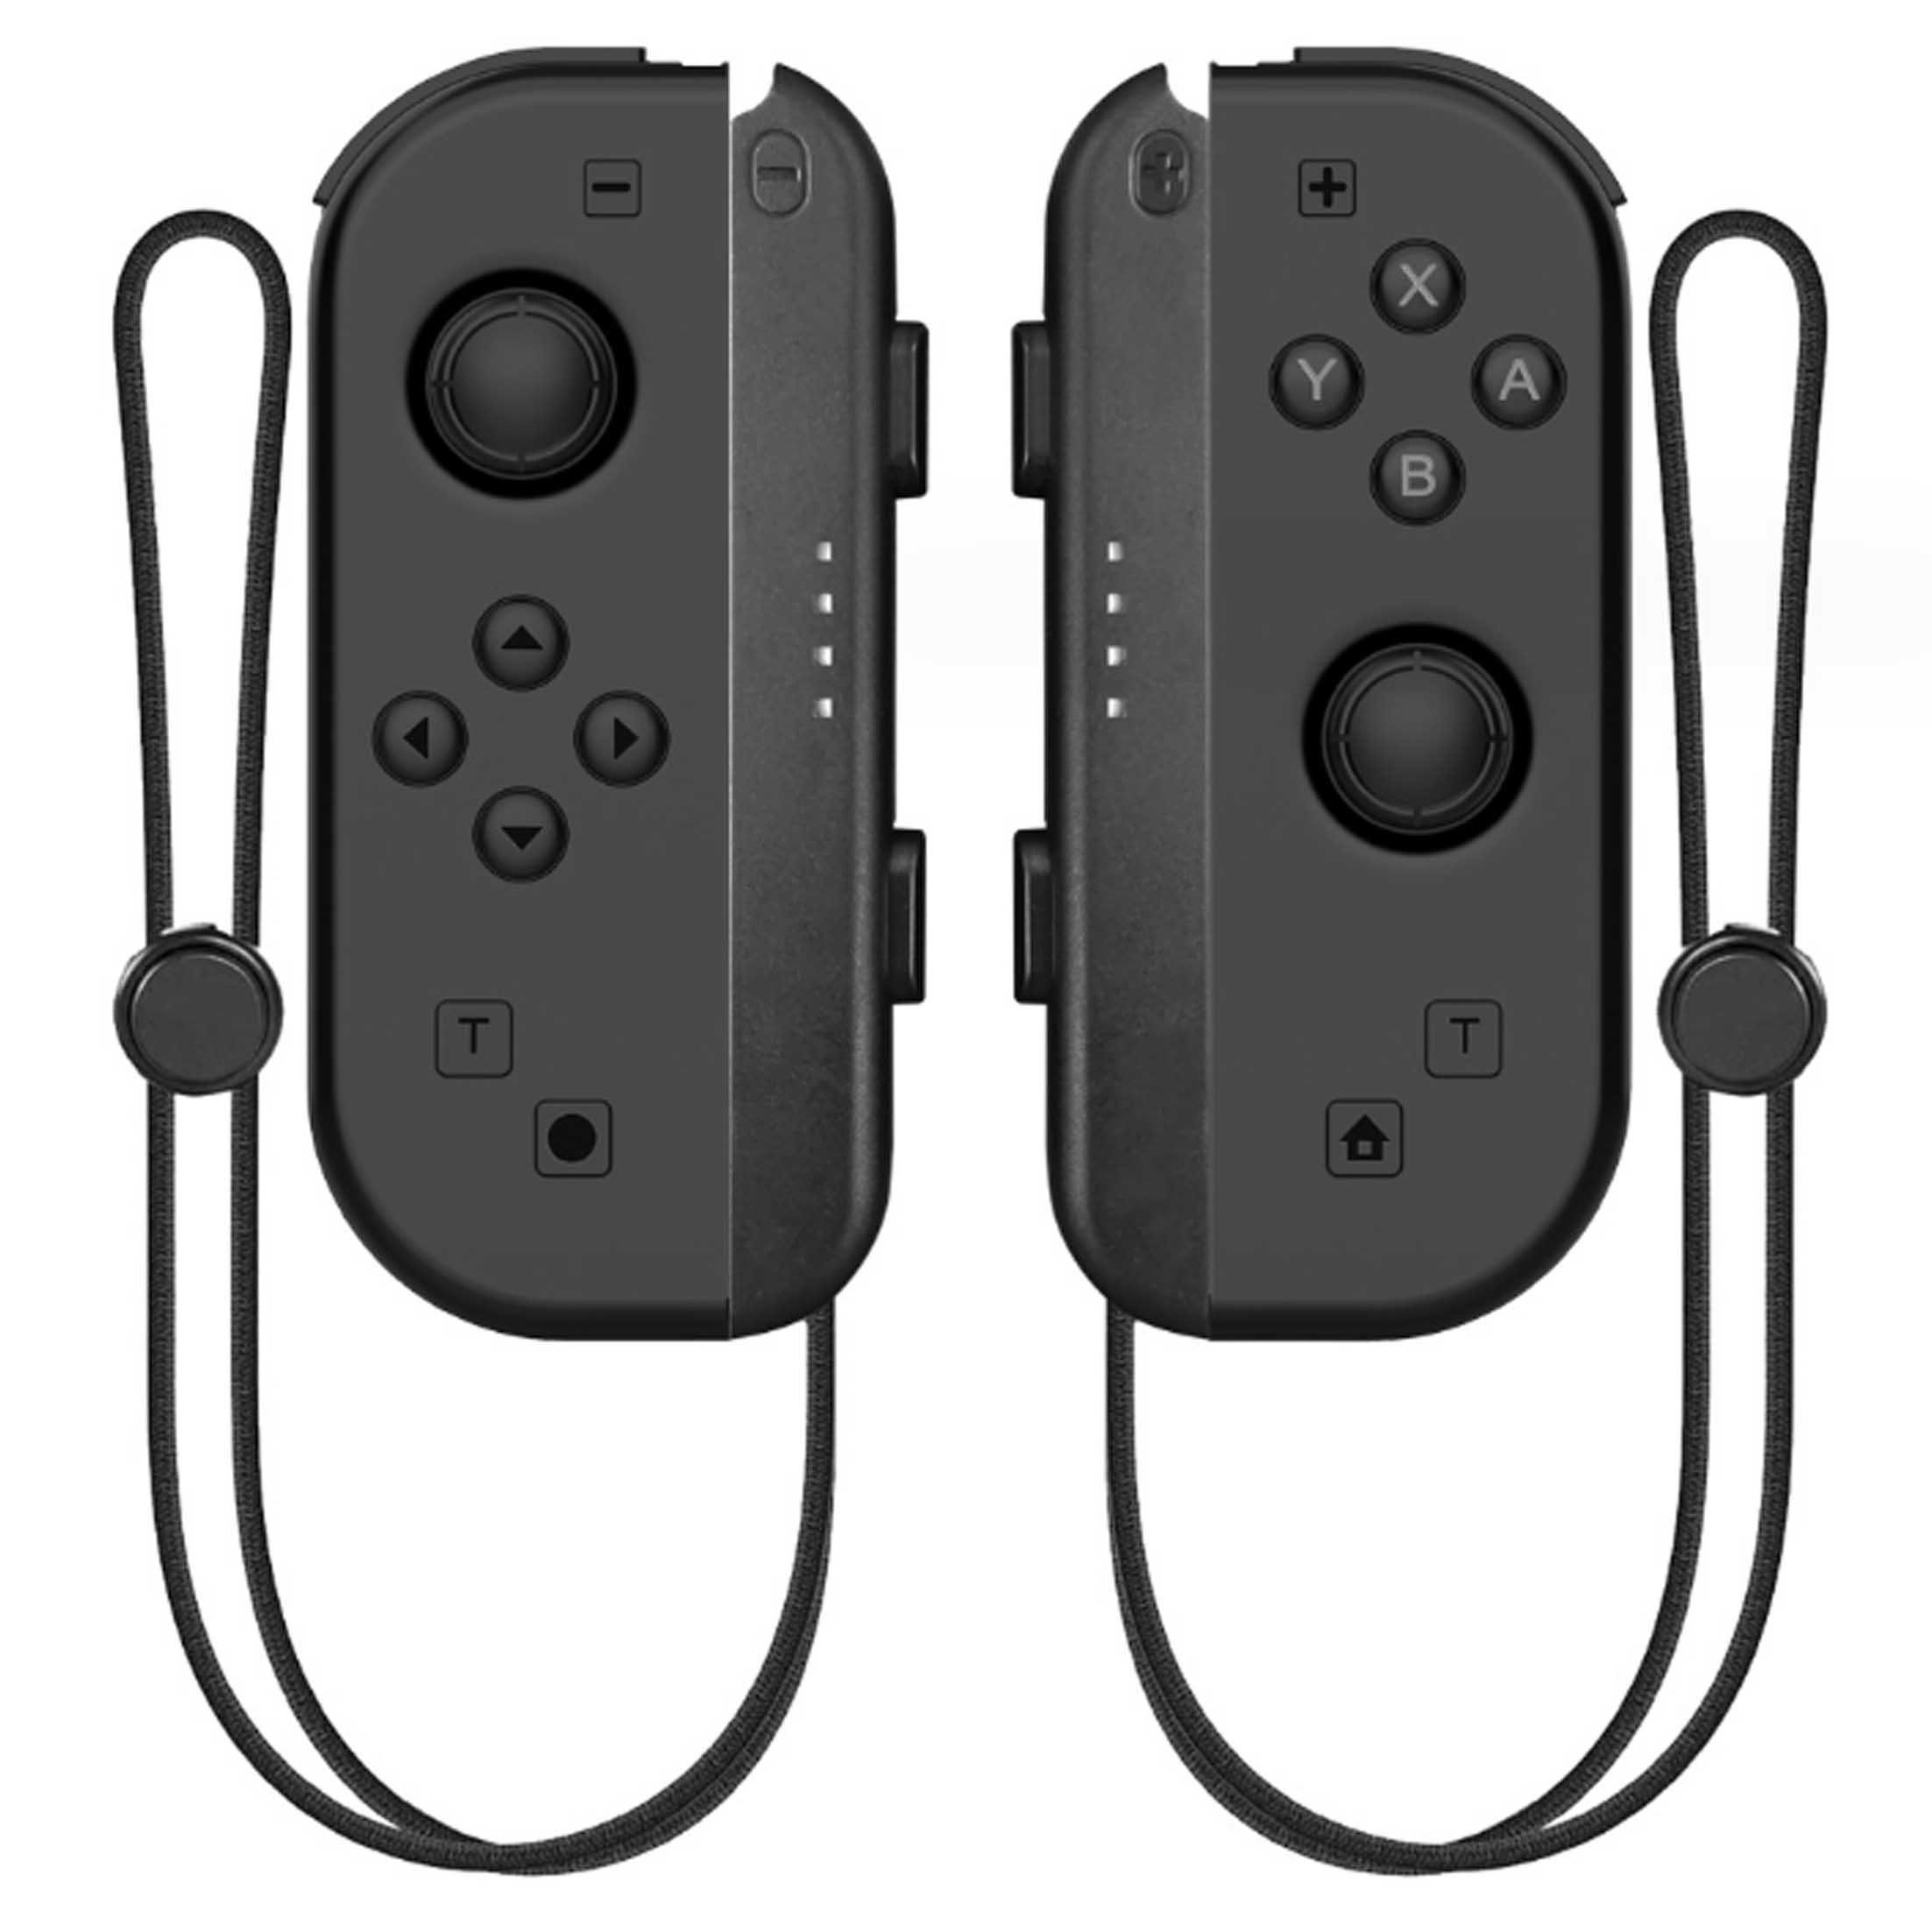 Tadow switch joy-con bluetooth kabellos links/rechts joystick spiele Gamepad (Doppelter Satz, Kraftrückkopplung, Vibrationssensorik,3D-Joysticks,die nicht schwimmen)